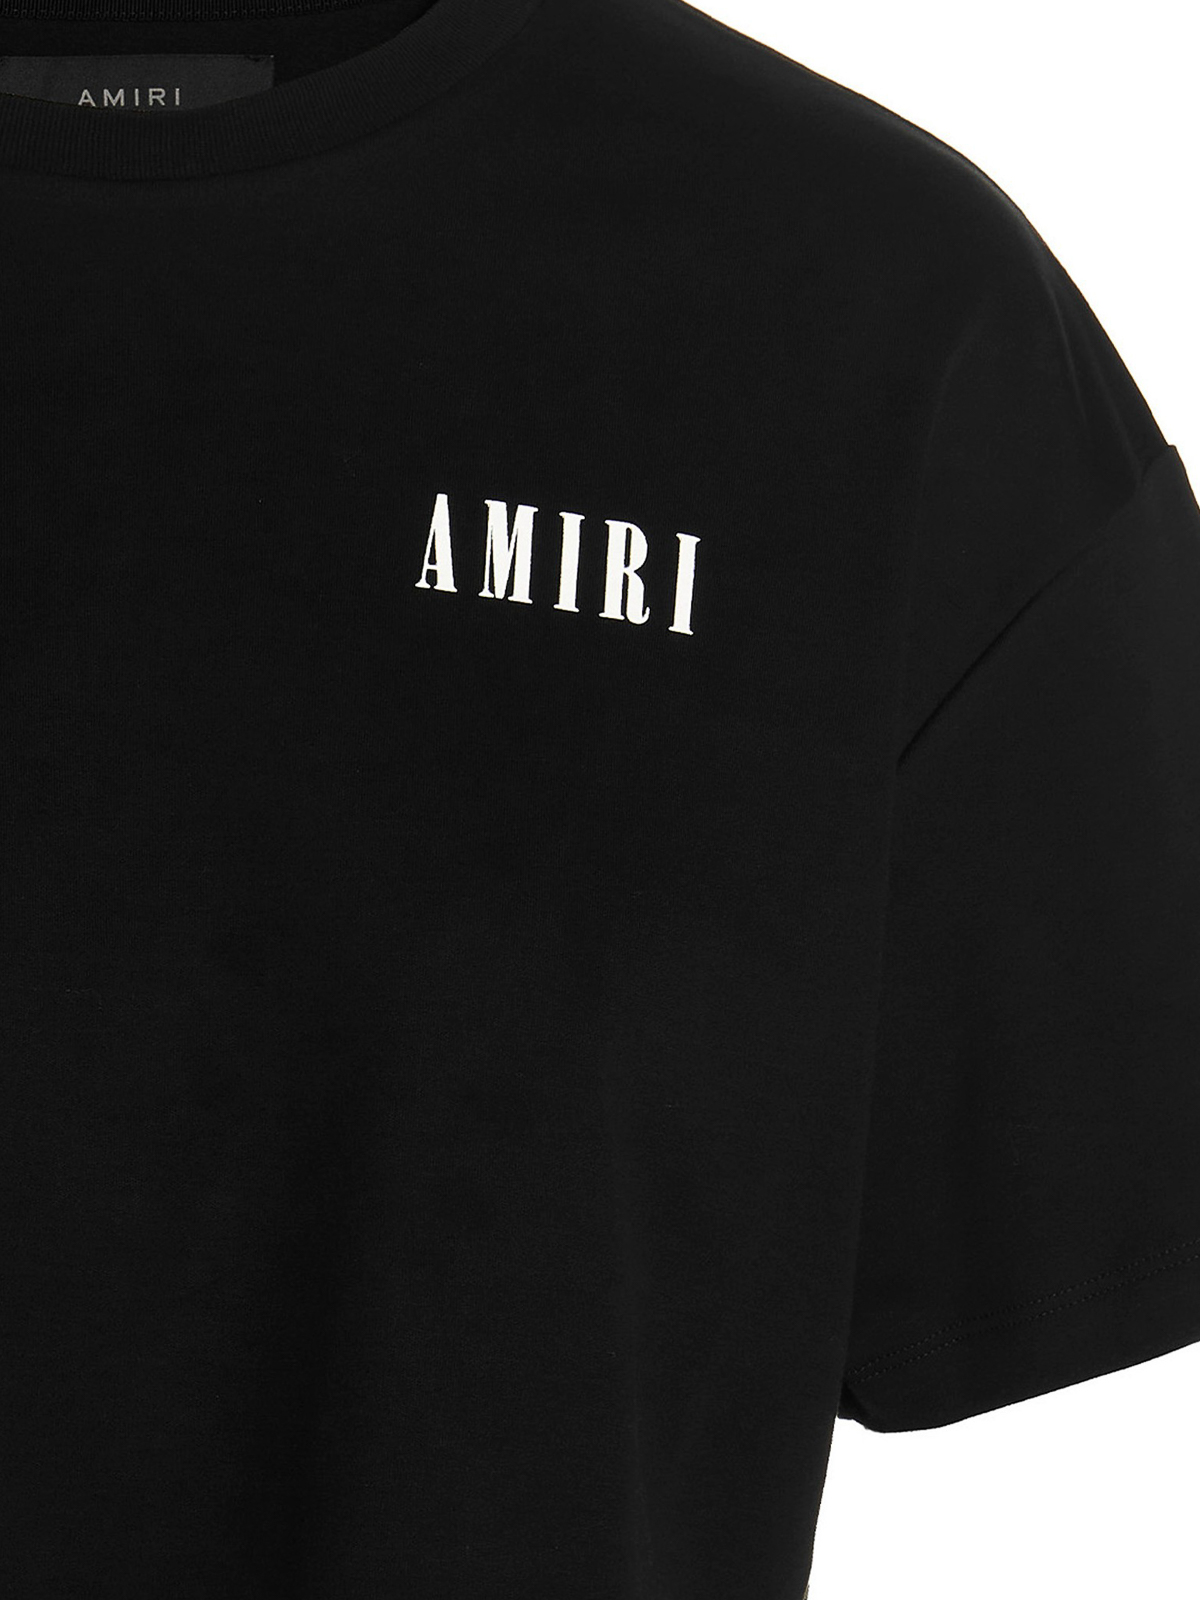 AMIRI Tシャツ